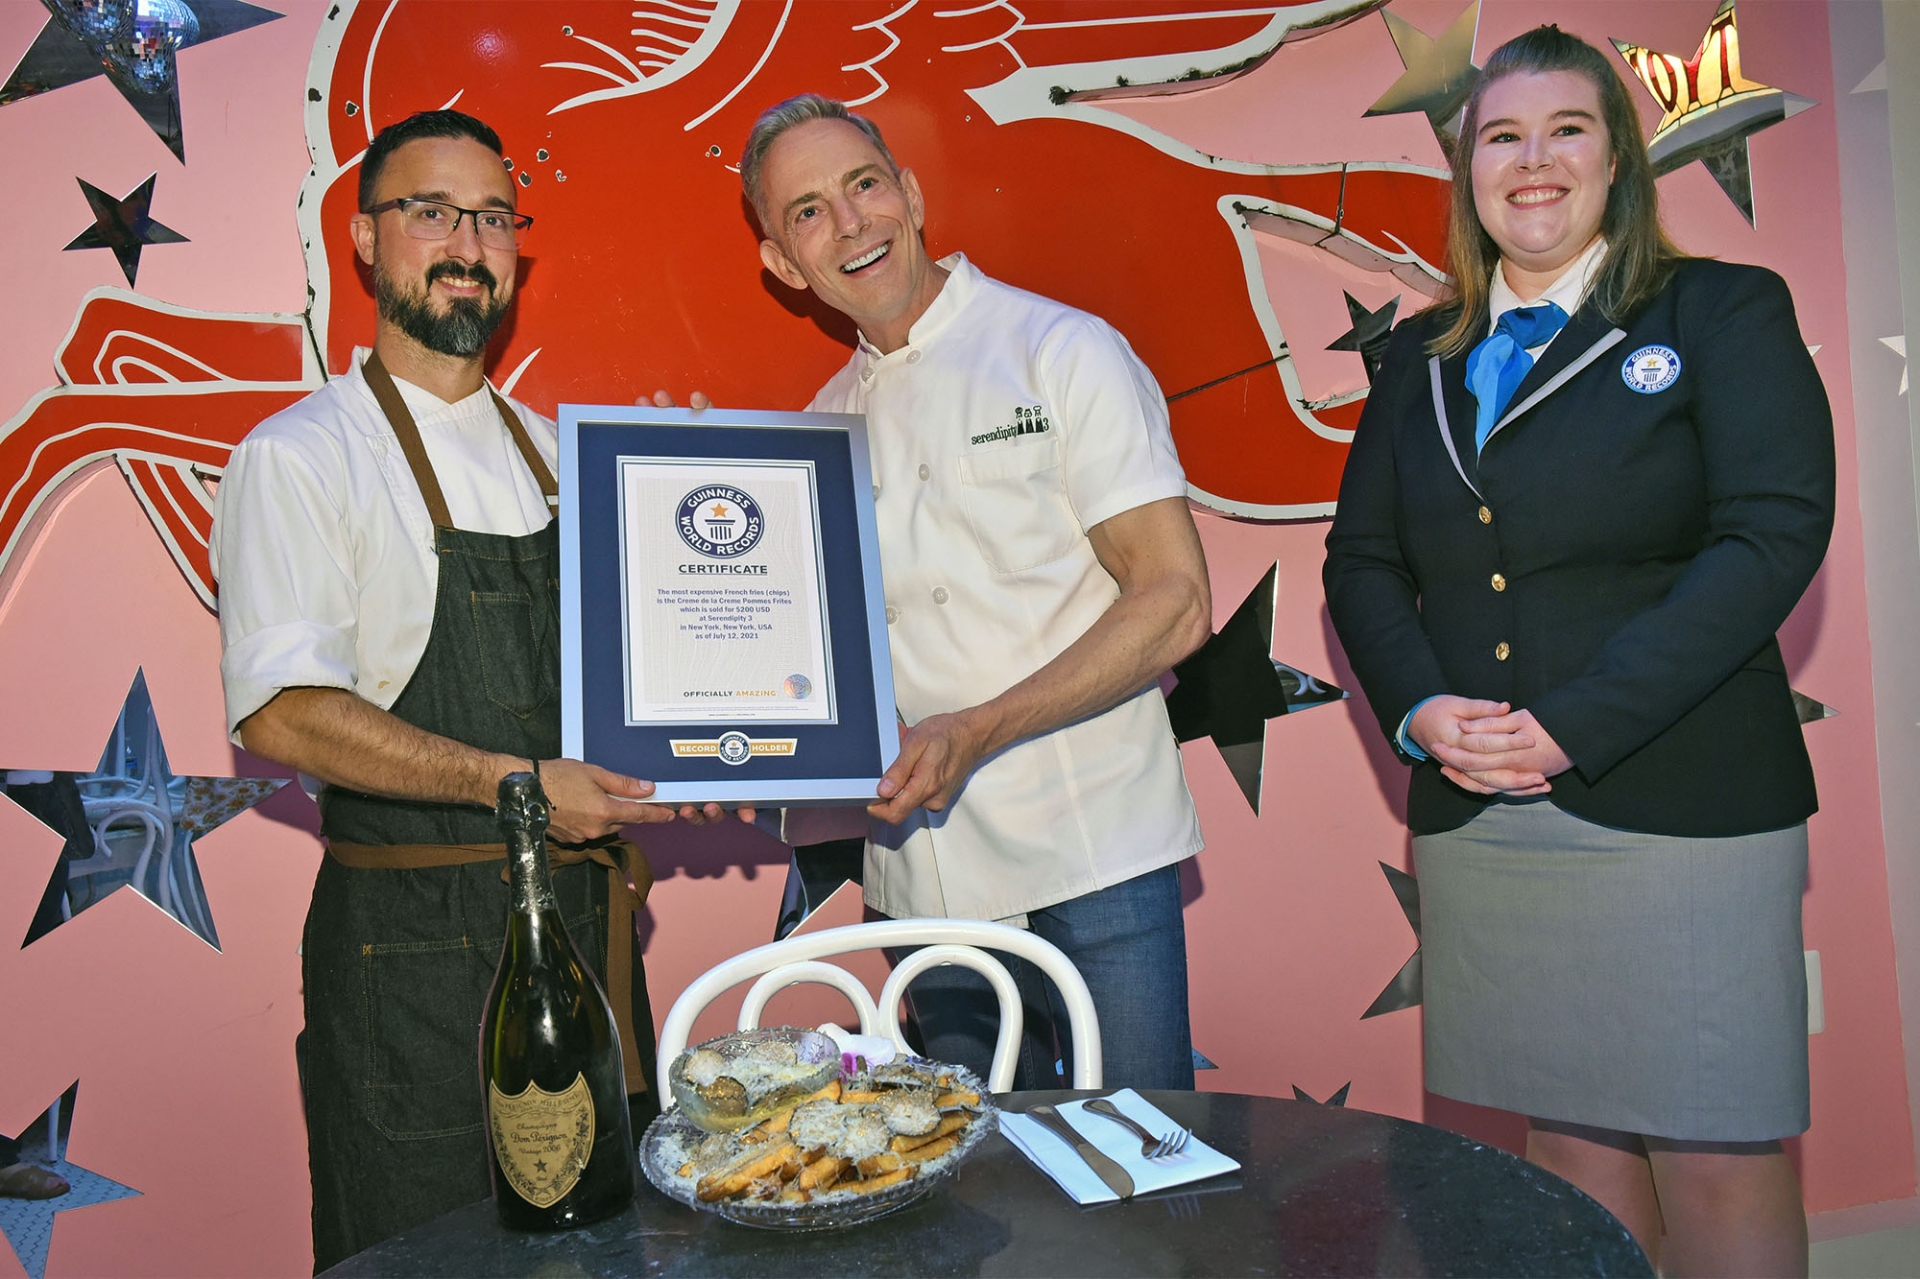 Nhà hàng Serendipity3 tại thành phố New York vừa phá kỷ lục Guinness thế giới với món khoai tây chiên đắt nhất thế giới.